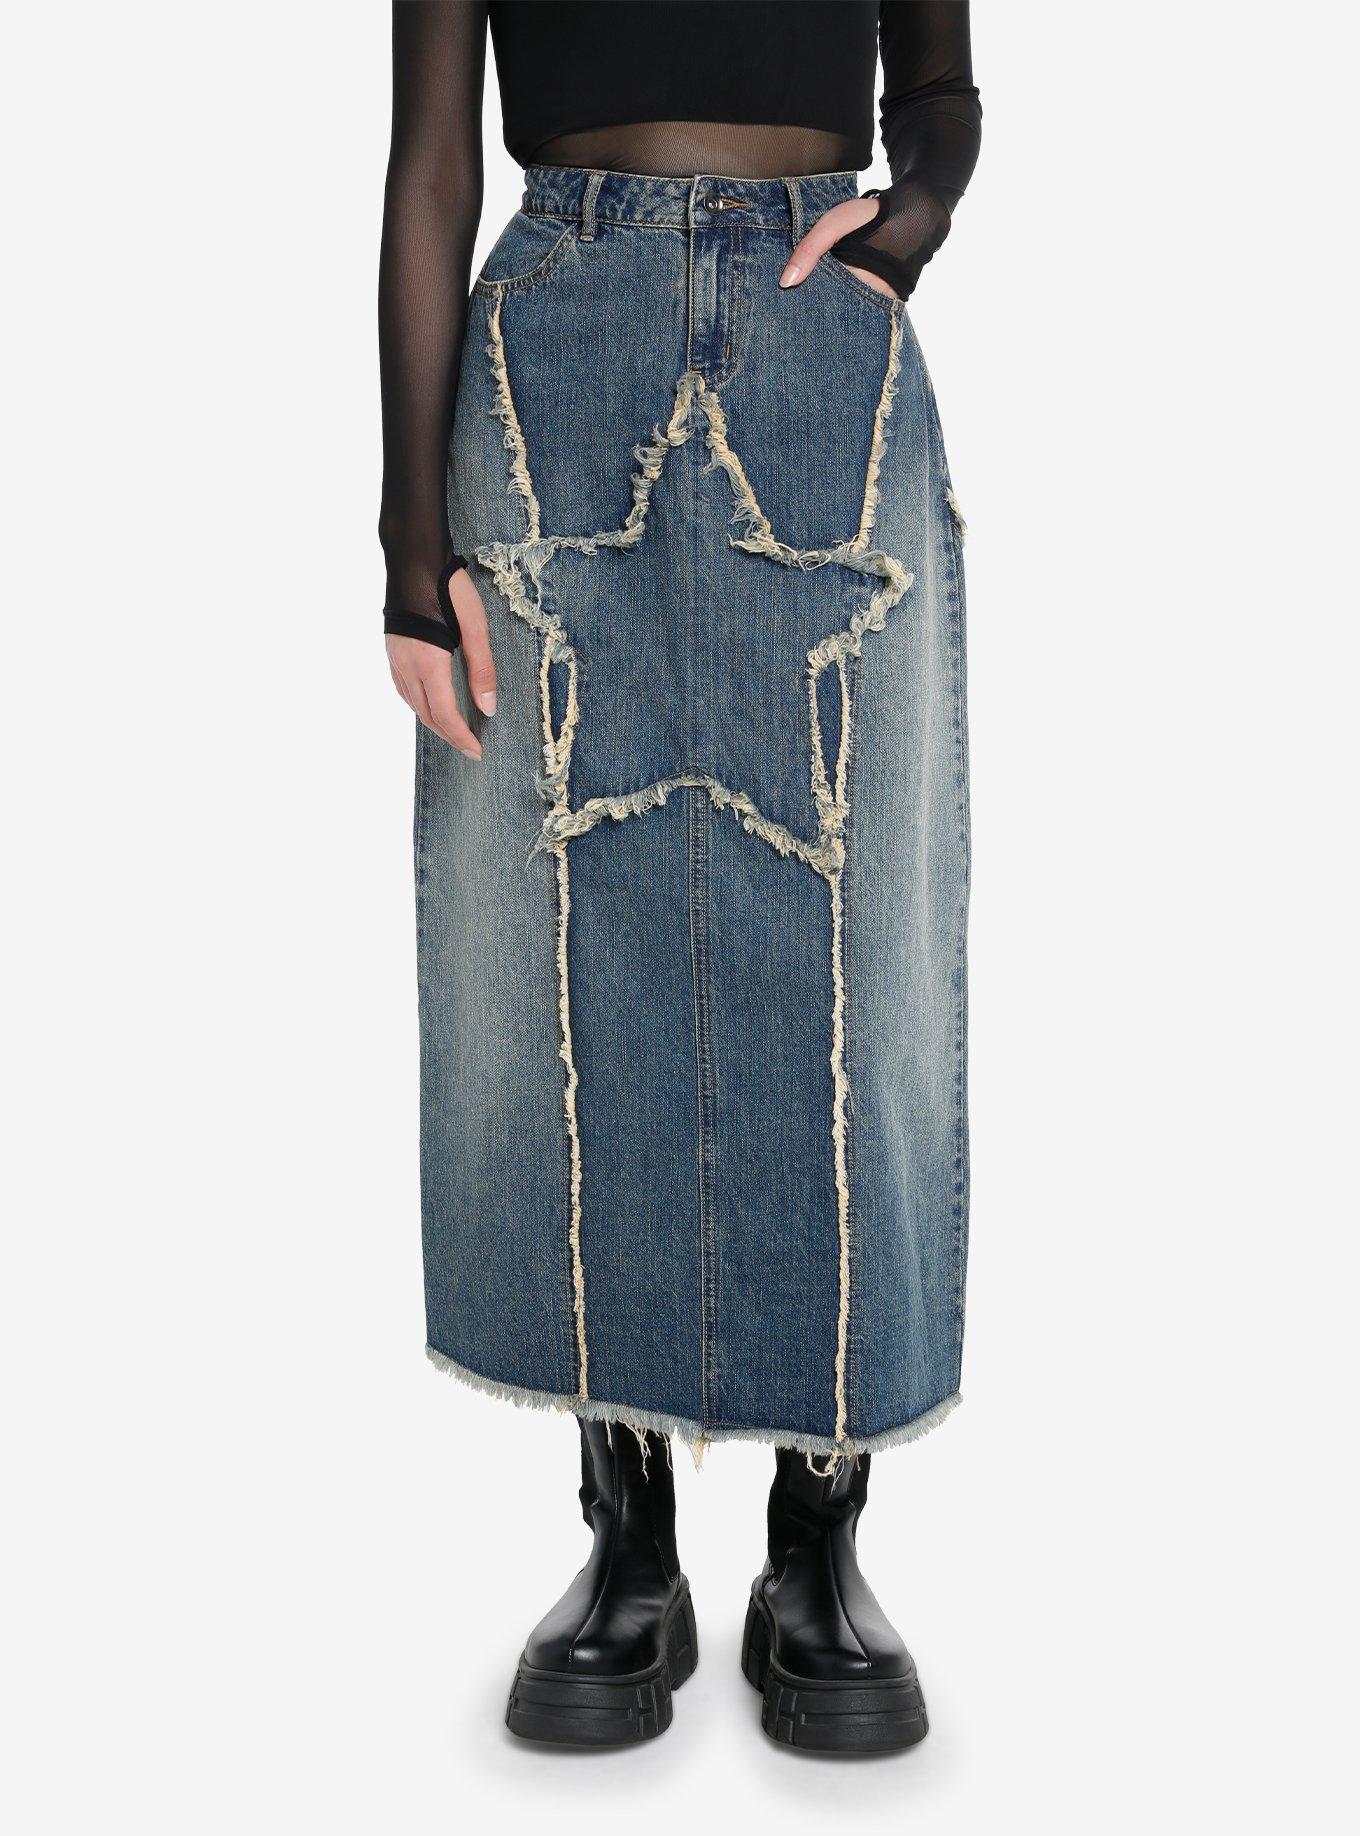 Long Denim Skirt 87954 – Zadie B's Fashions